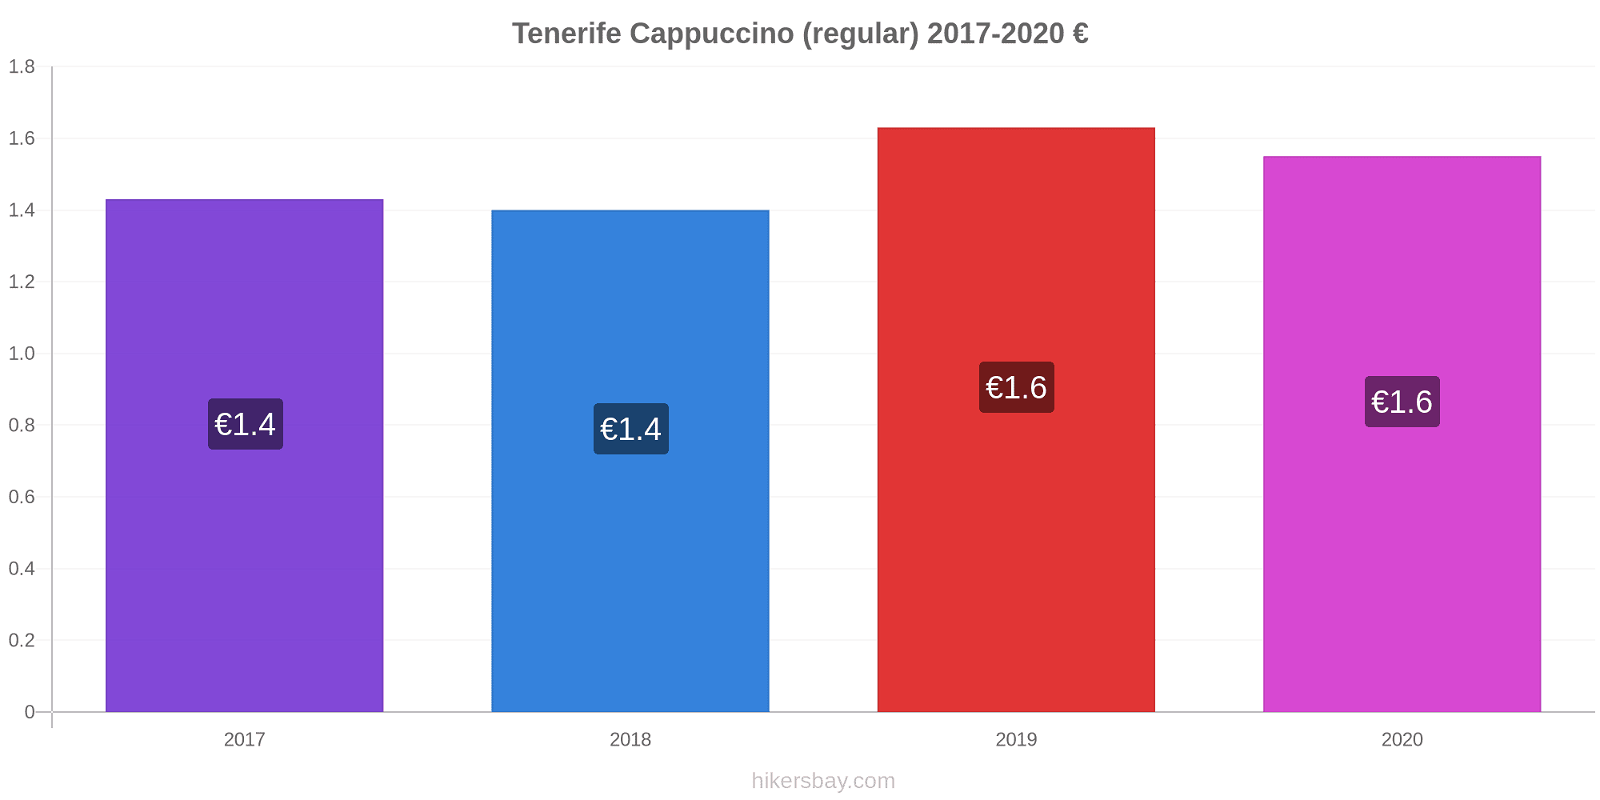 Tenerife price changes Cappuccino (regular) hikersbay.com